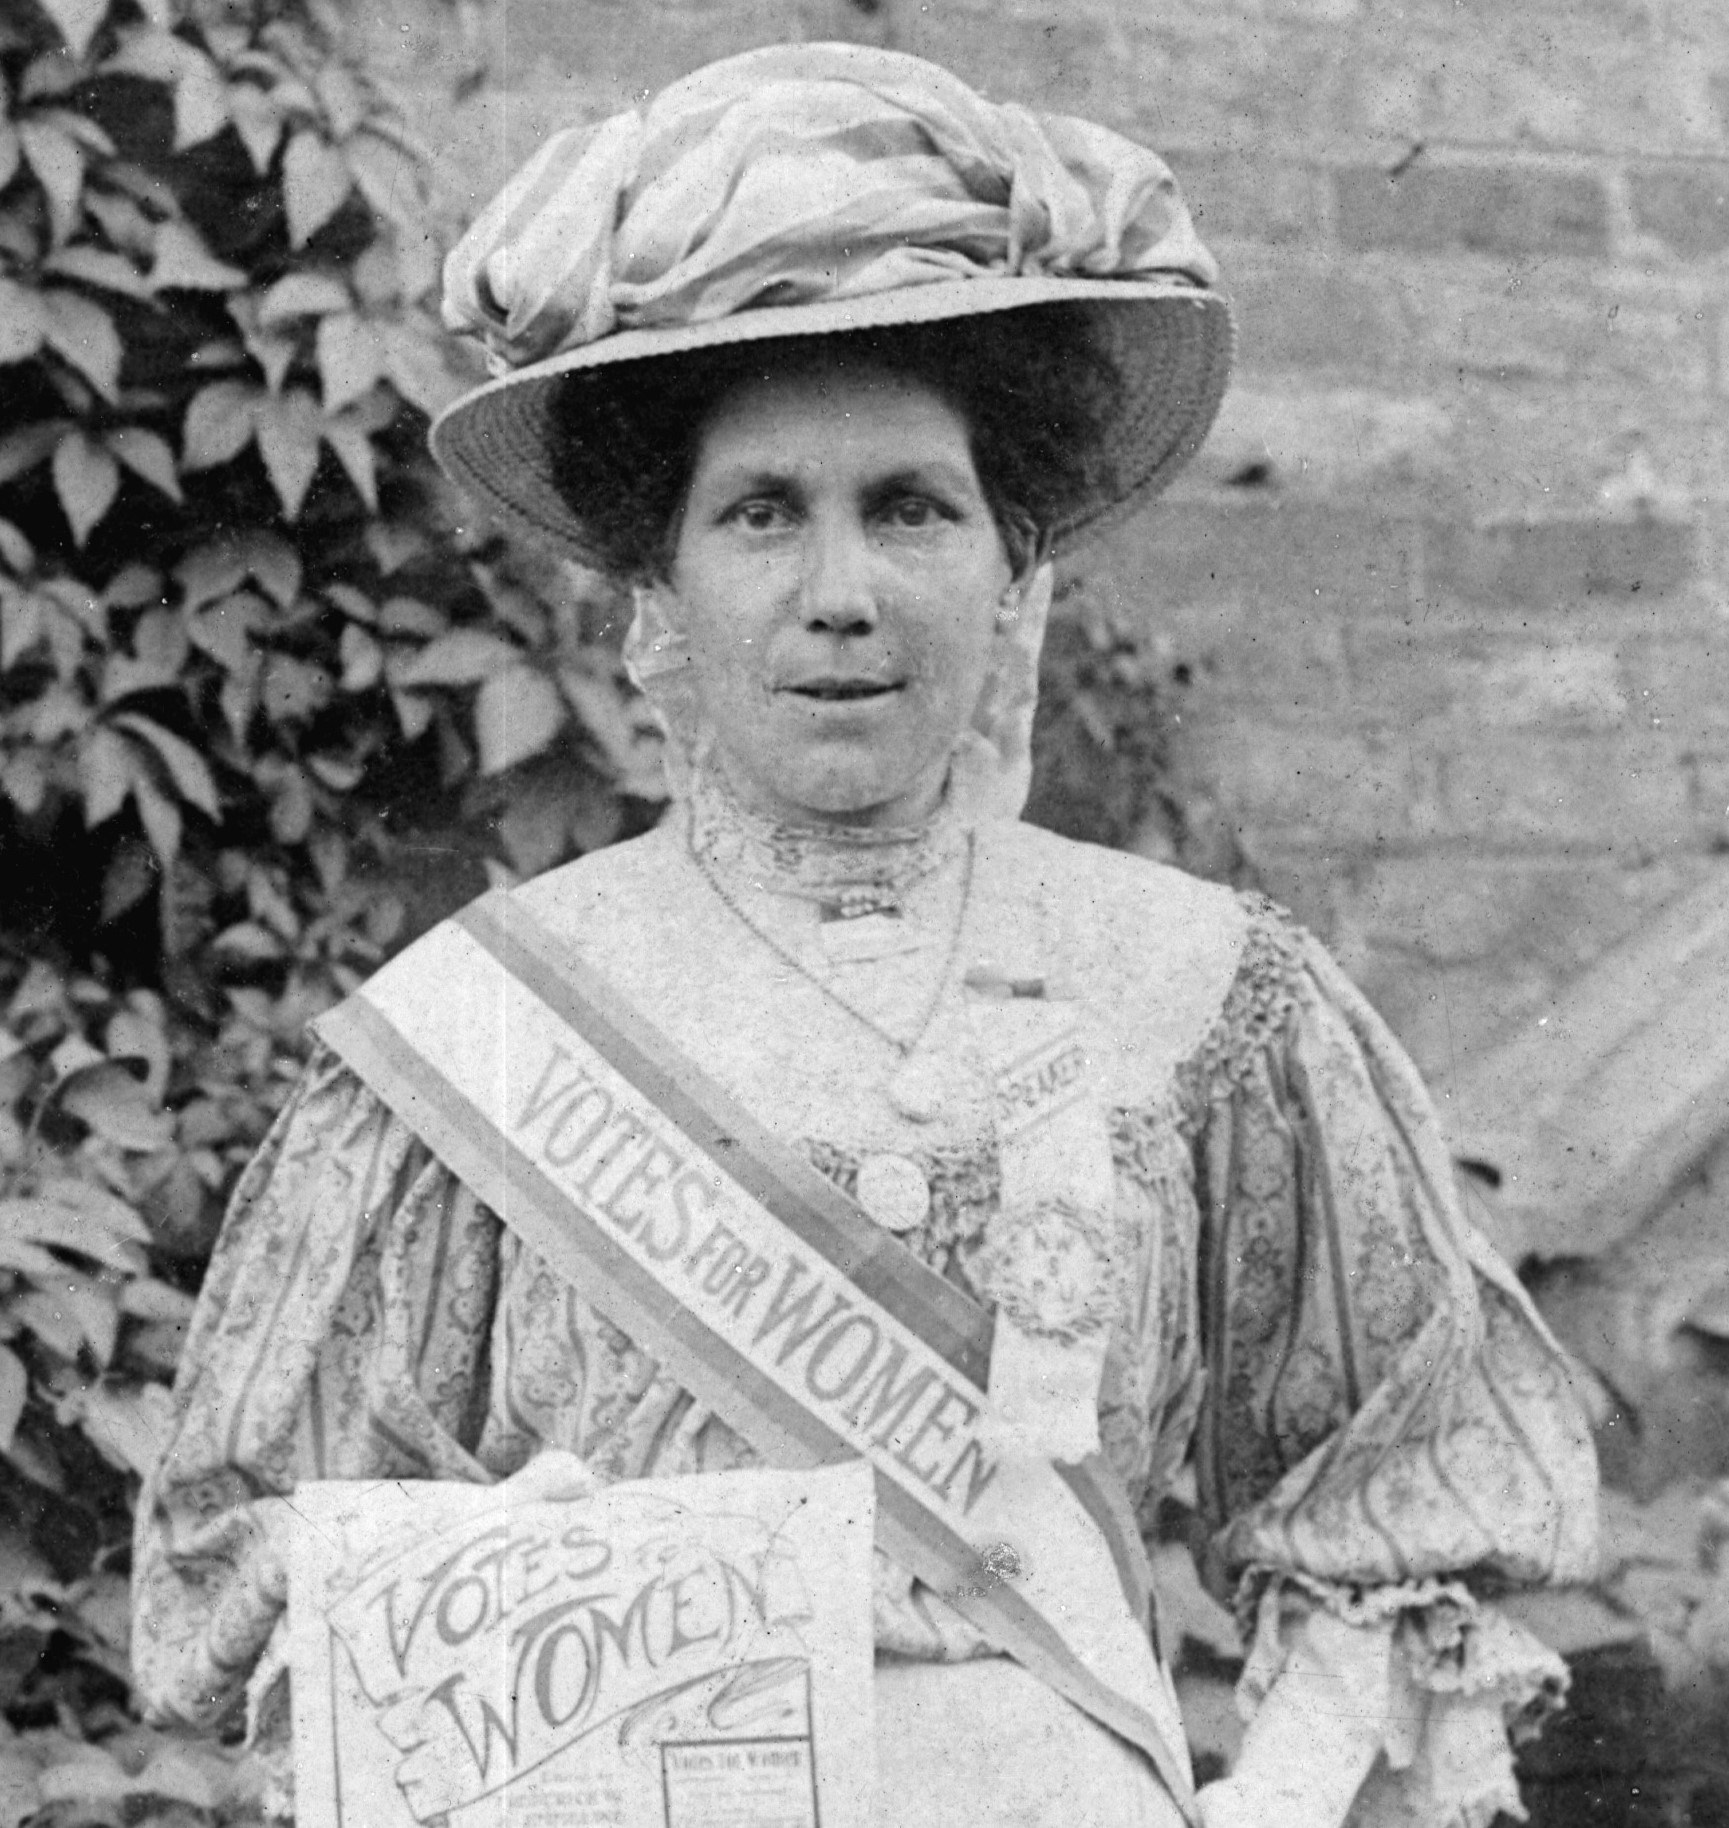 Alice Hawkins Suffragette. A talk by great-grandson Peter Barratt